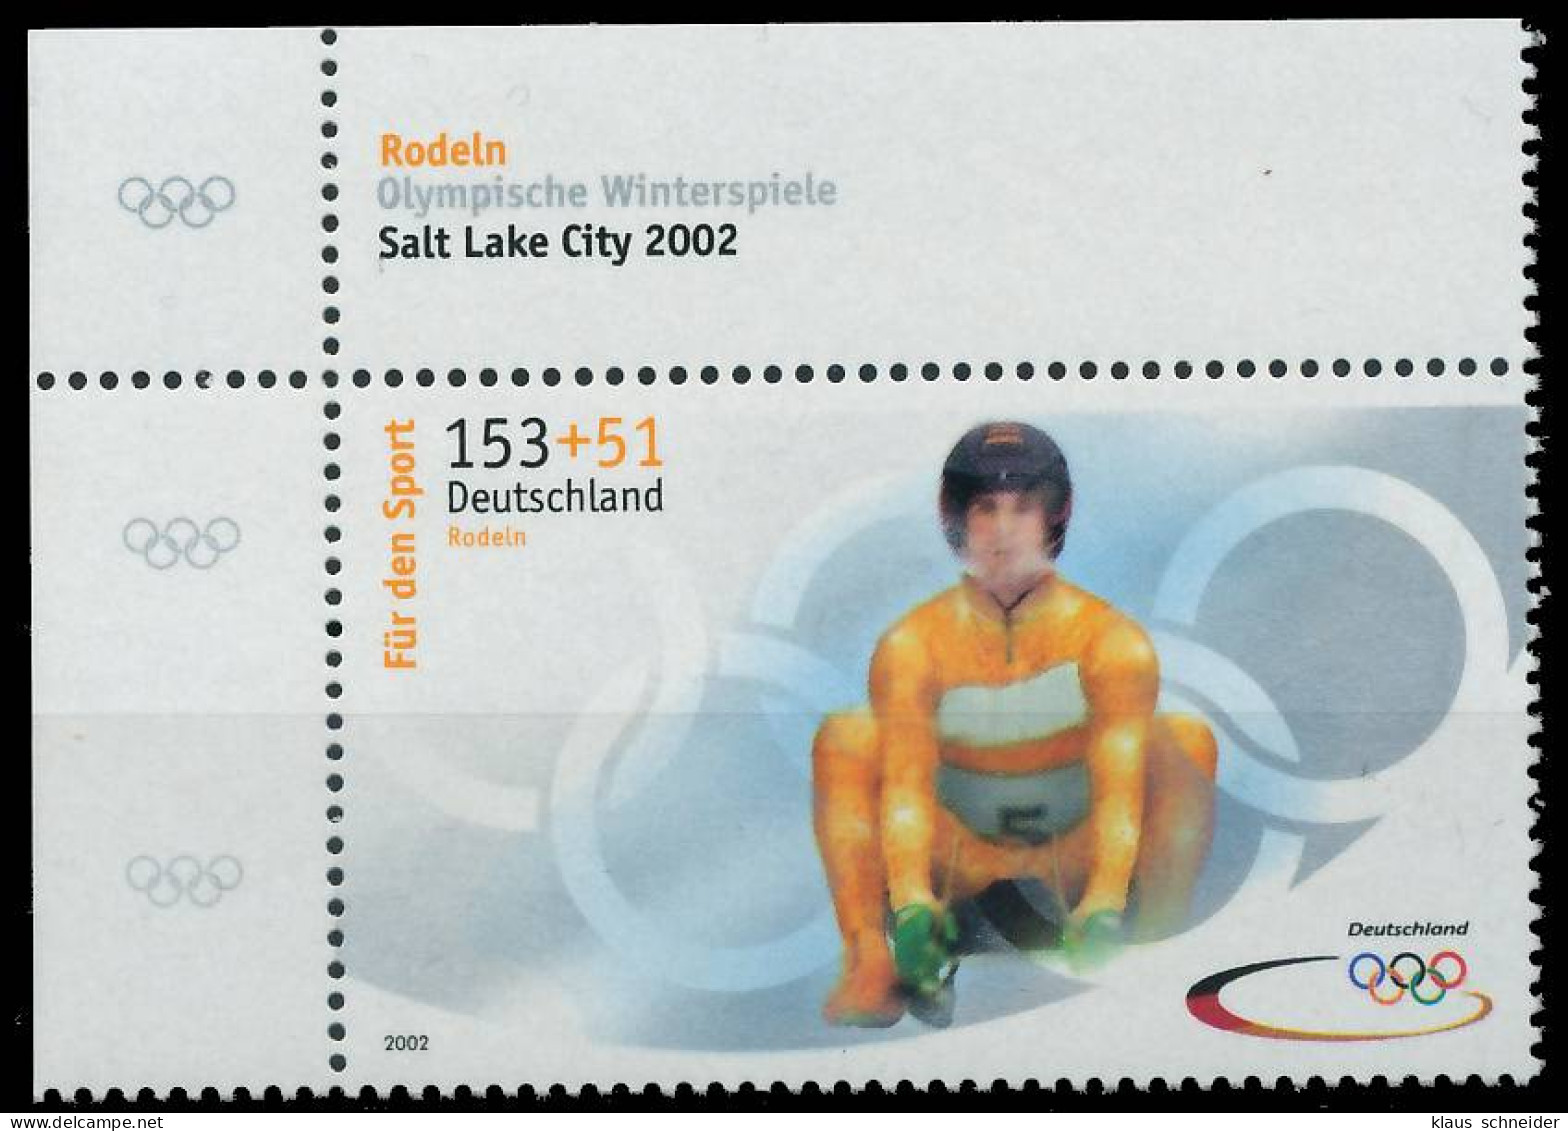 BRD BUND 2002 Nr 2240a Postfrisch ECKE-OLI X2FF5DE - Unused Stamps